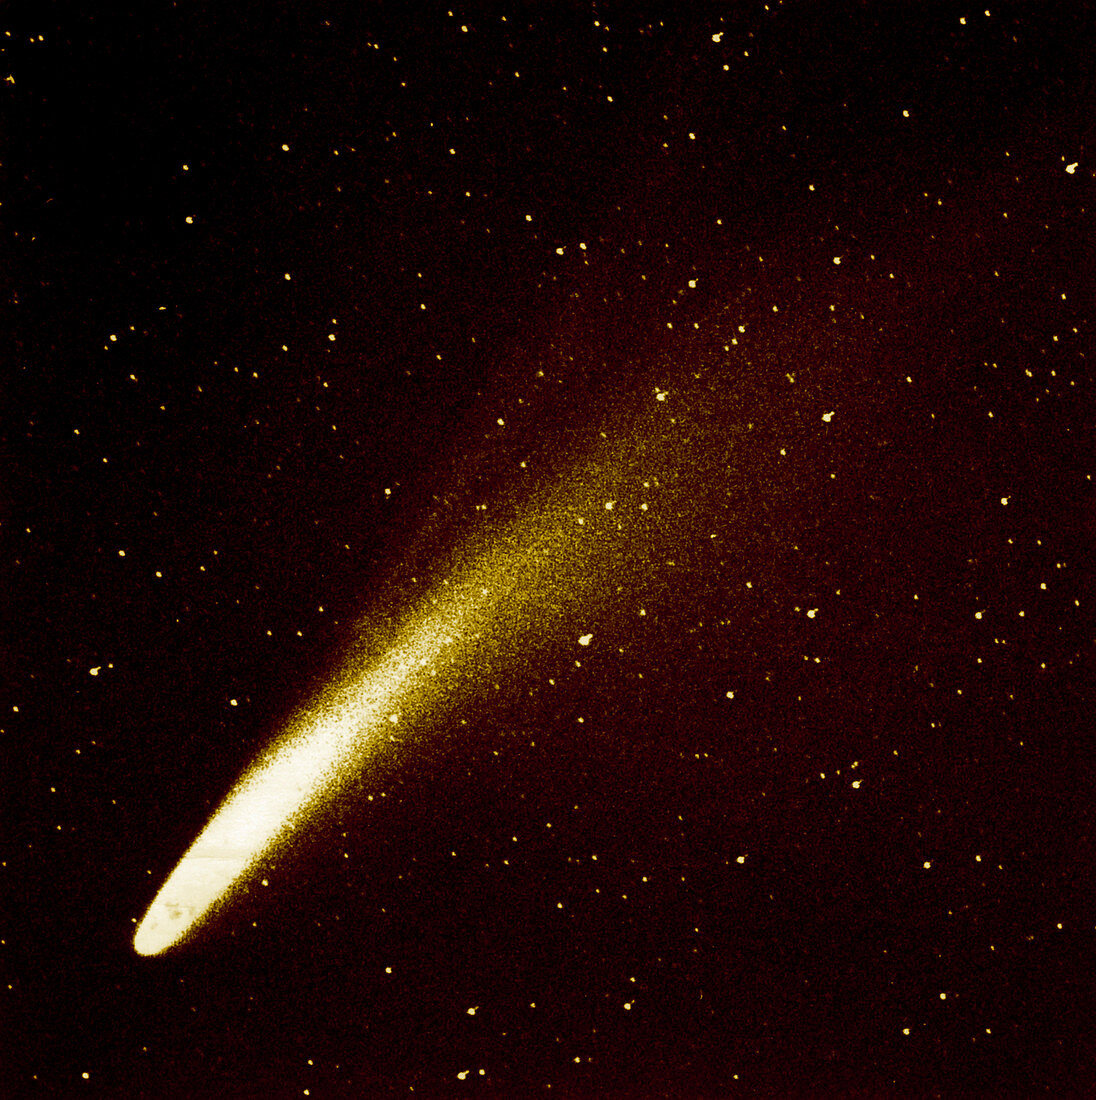 Bennett's Comet